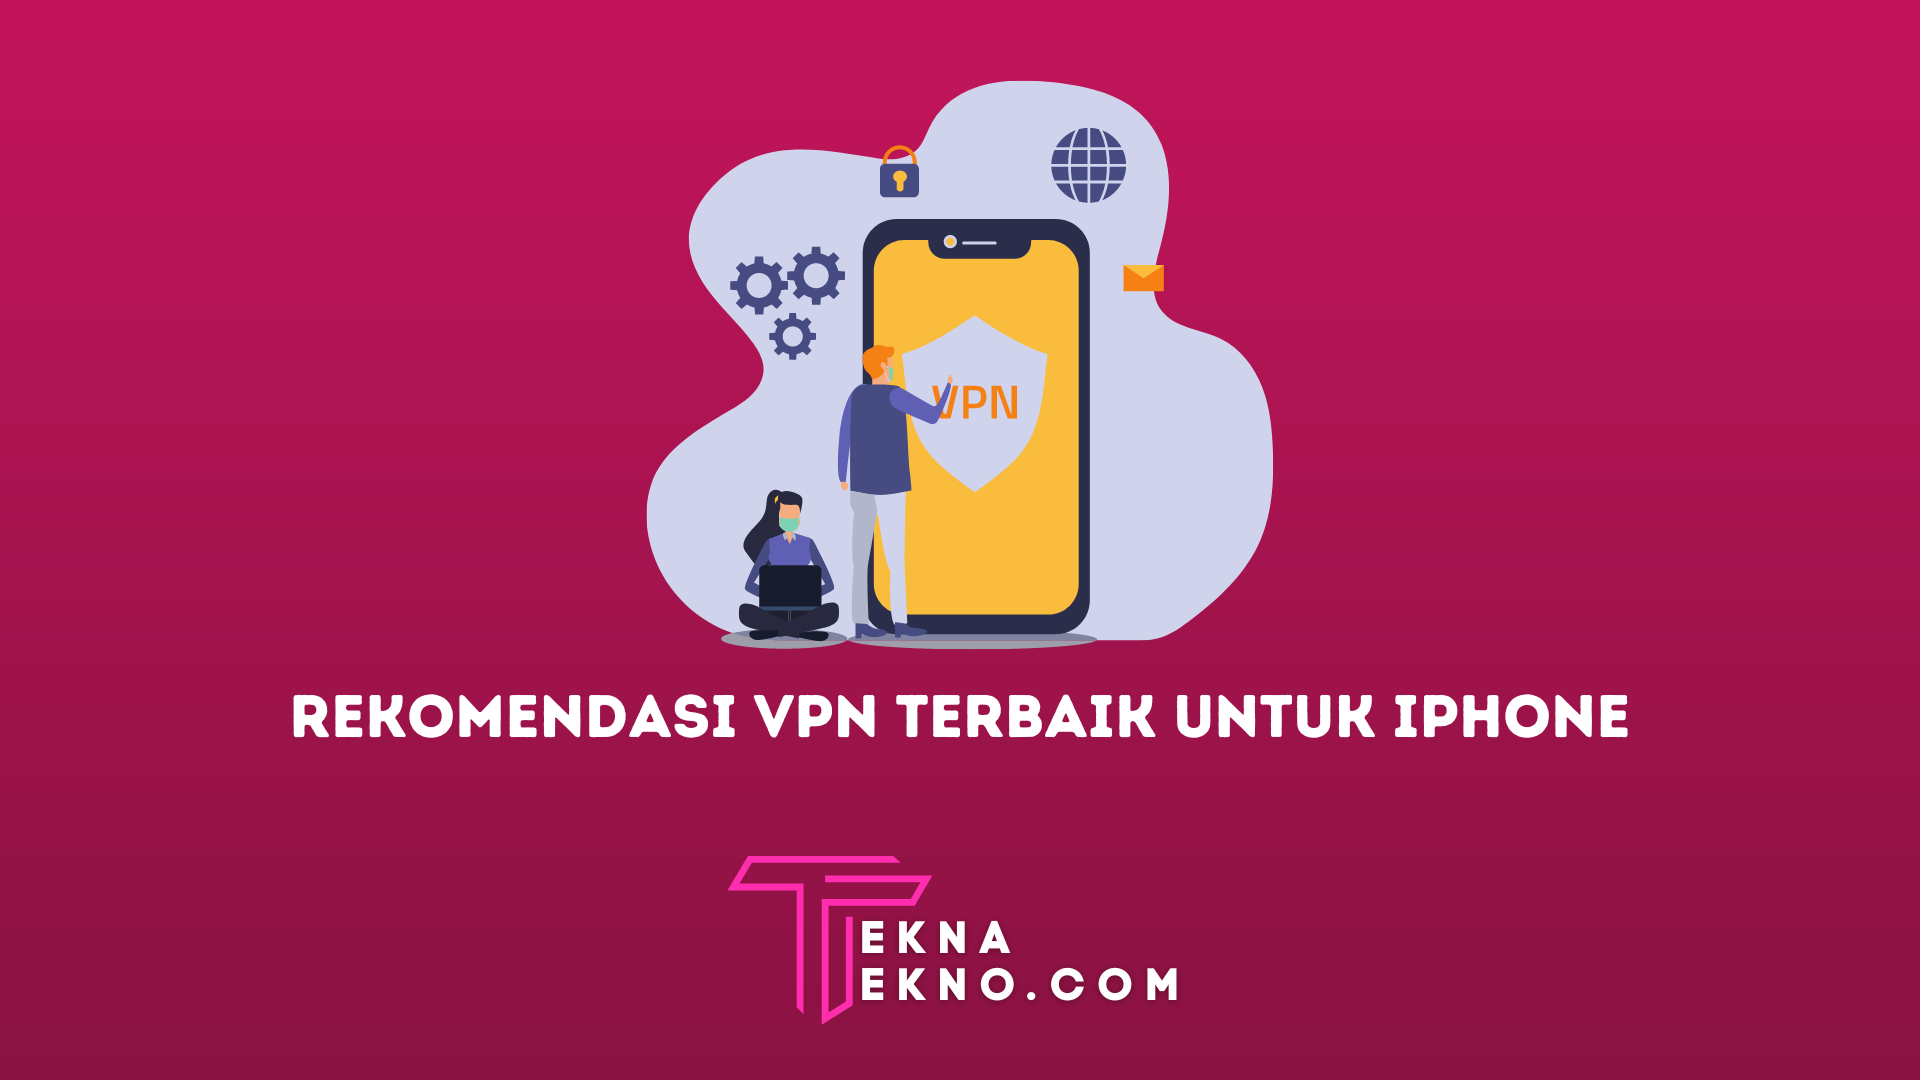 10 Rekomendasi VPN Terbaik untuk iPhone, Gratis dan Cepat